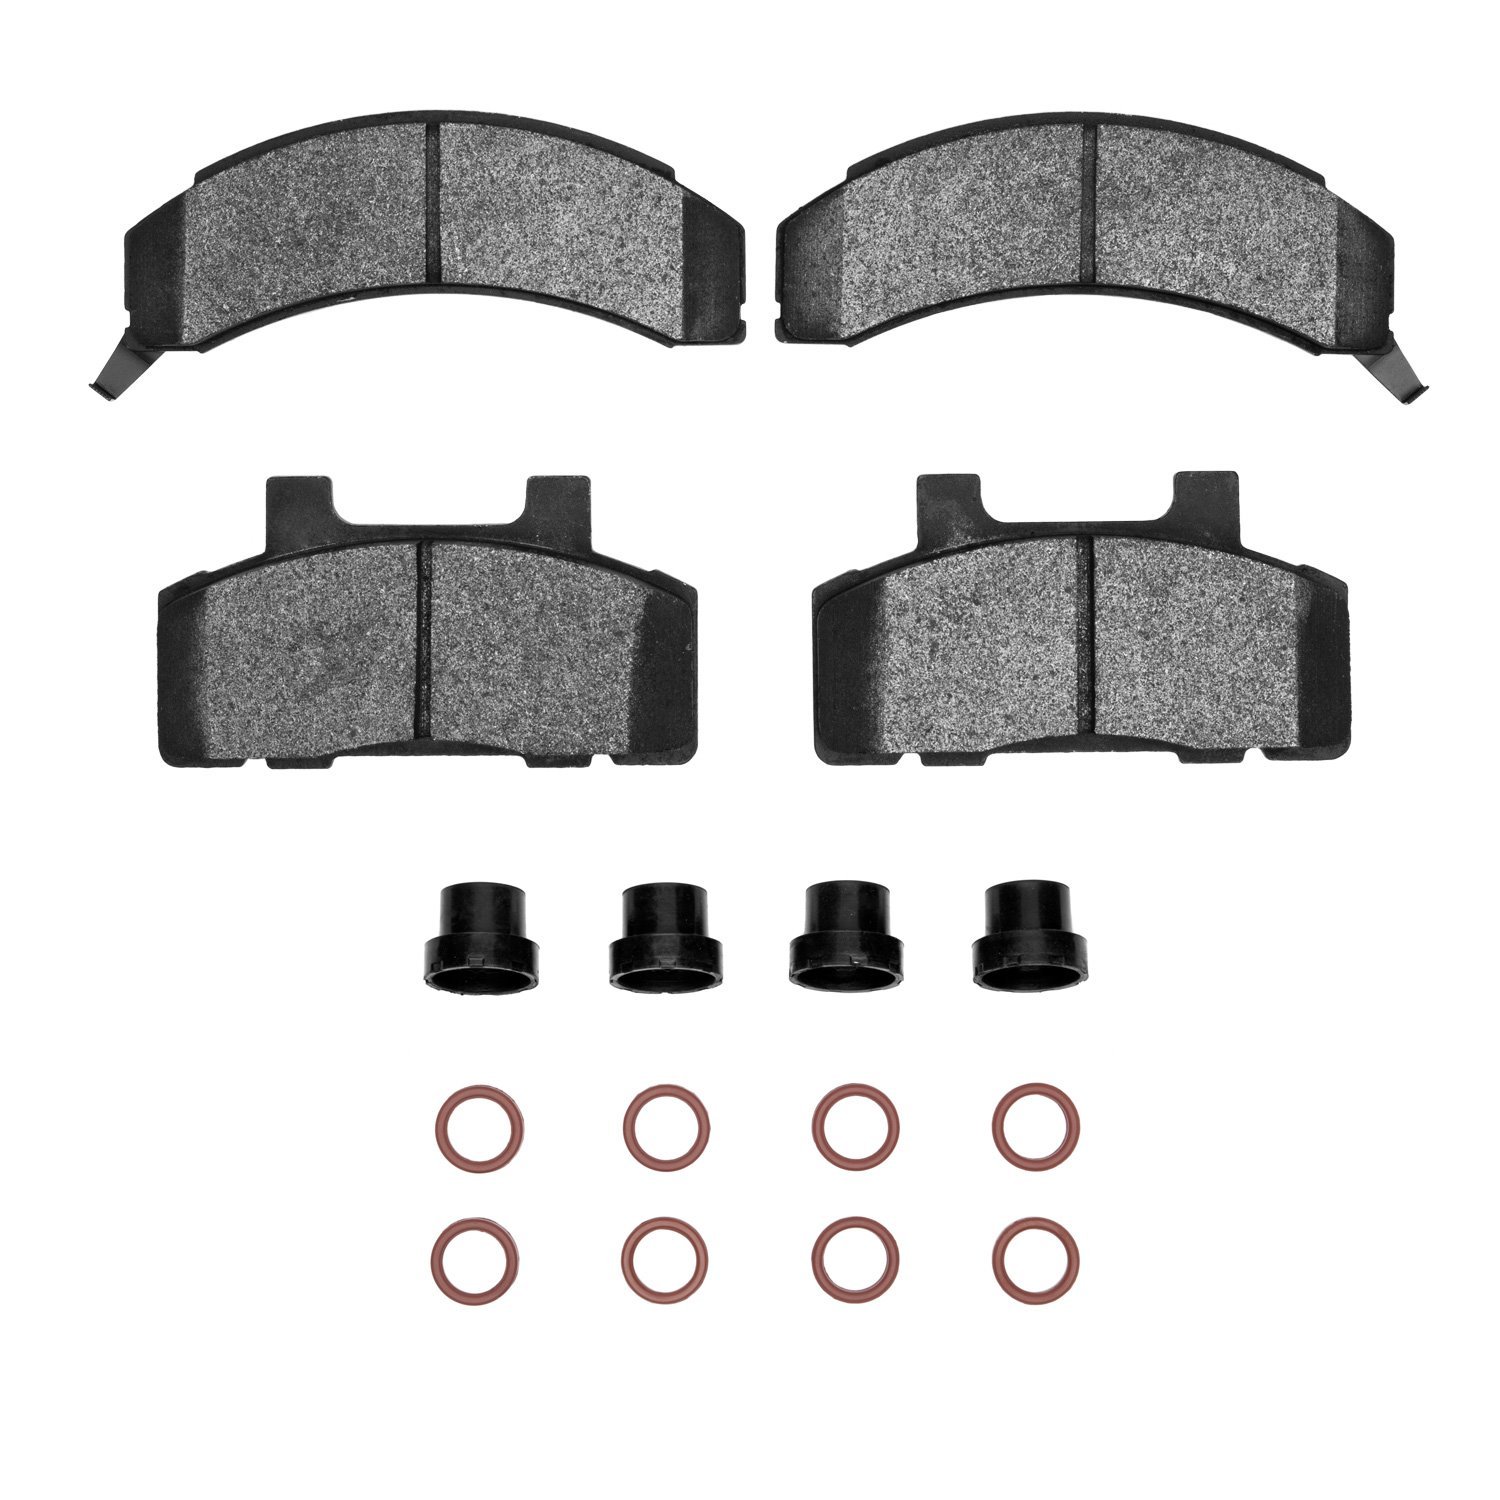 Semi-Metallic Brake Pads & Hardware Kit, 1983-1990 GM, Position: Front